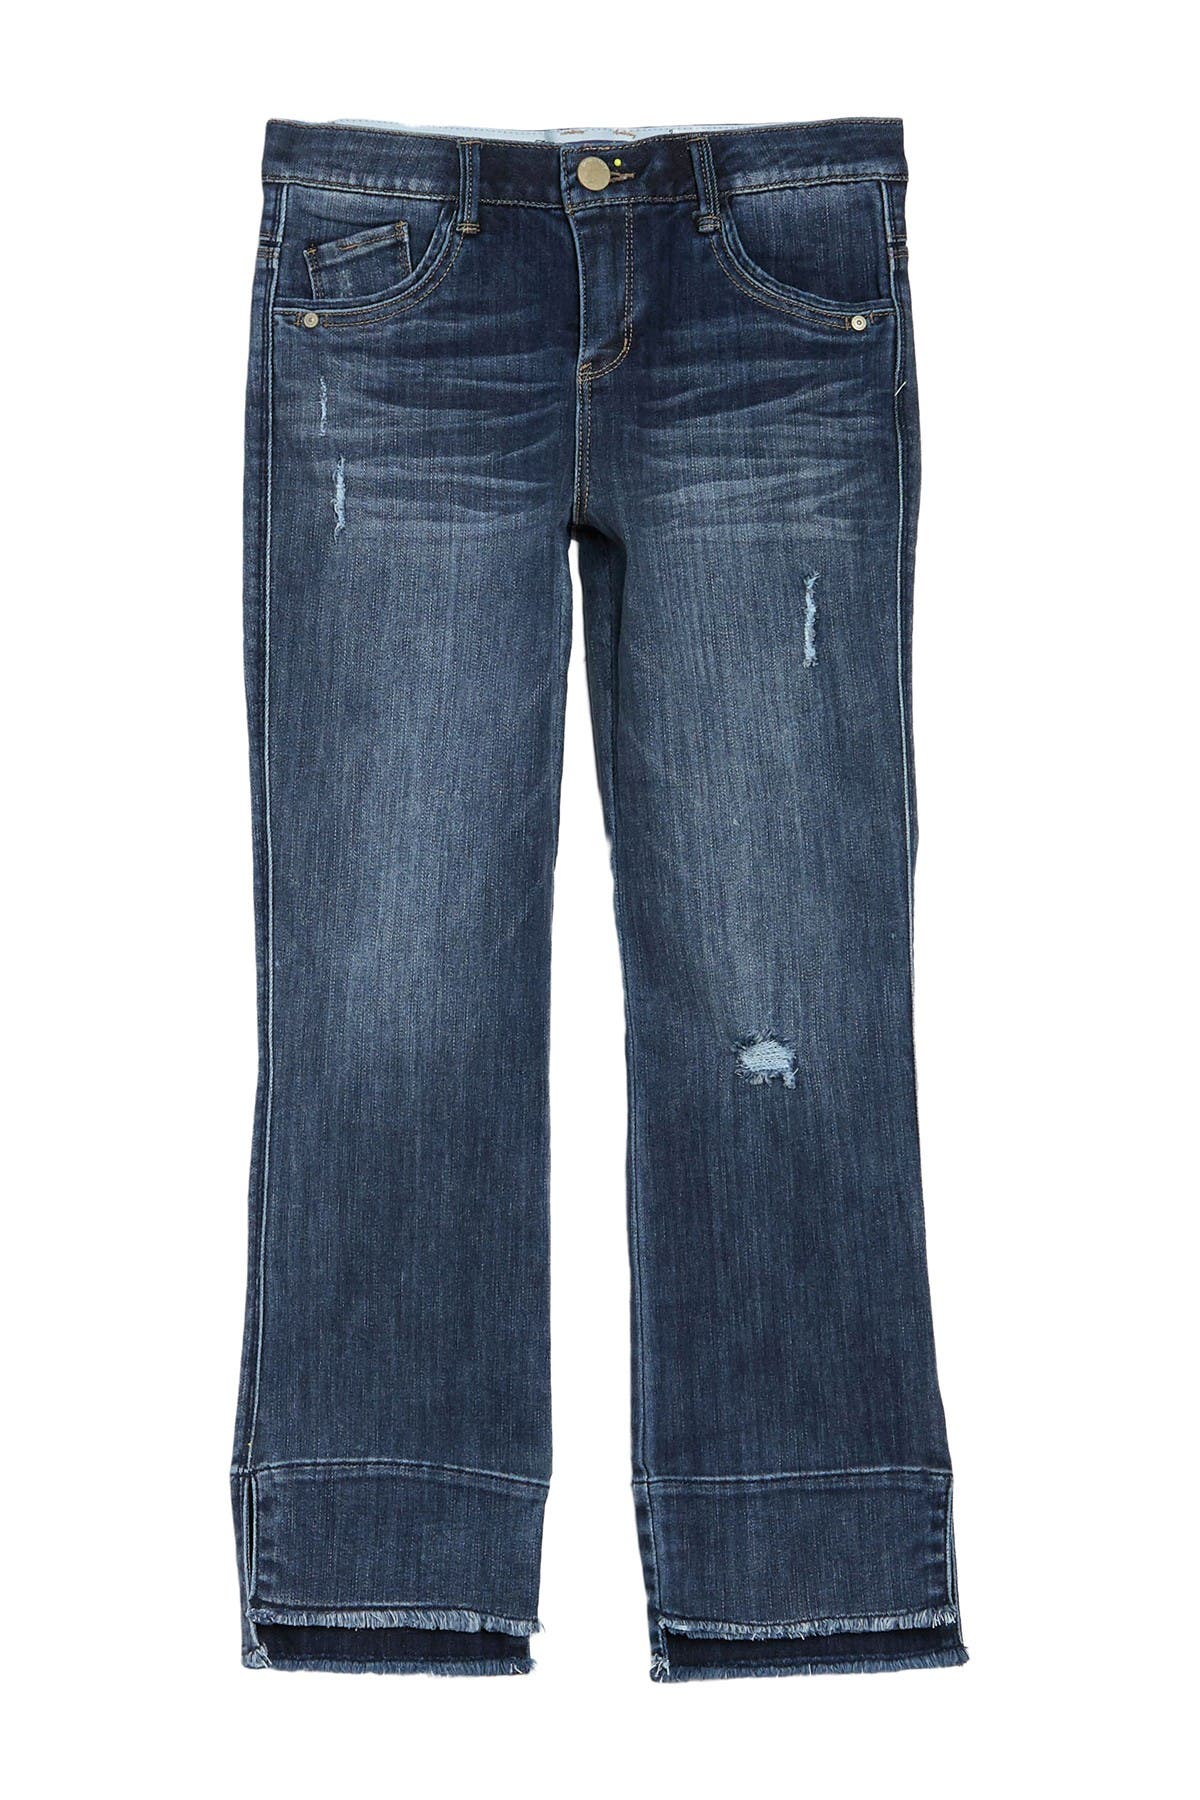 flare jeans nordstrom rack